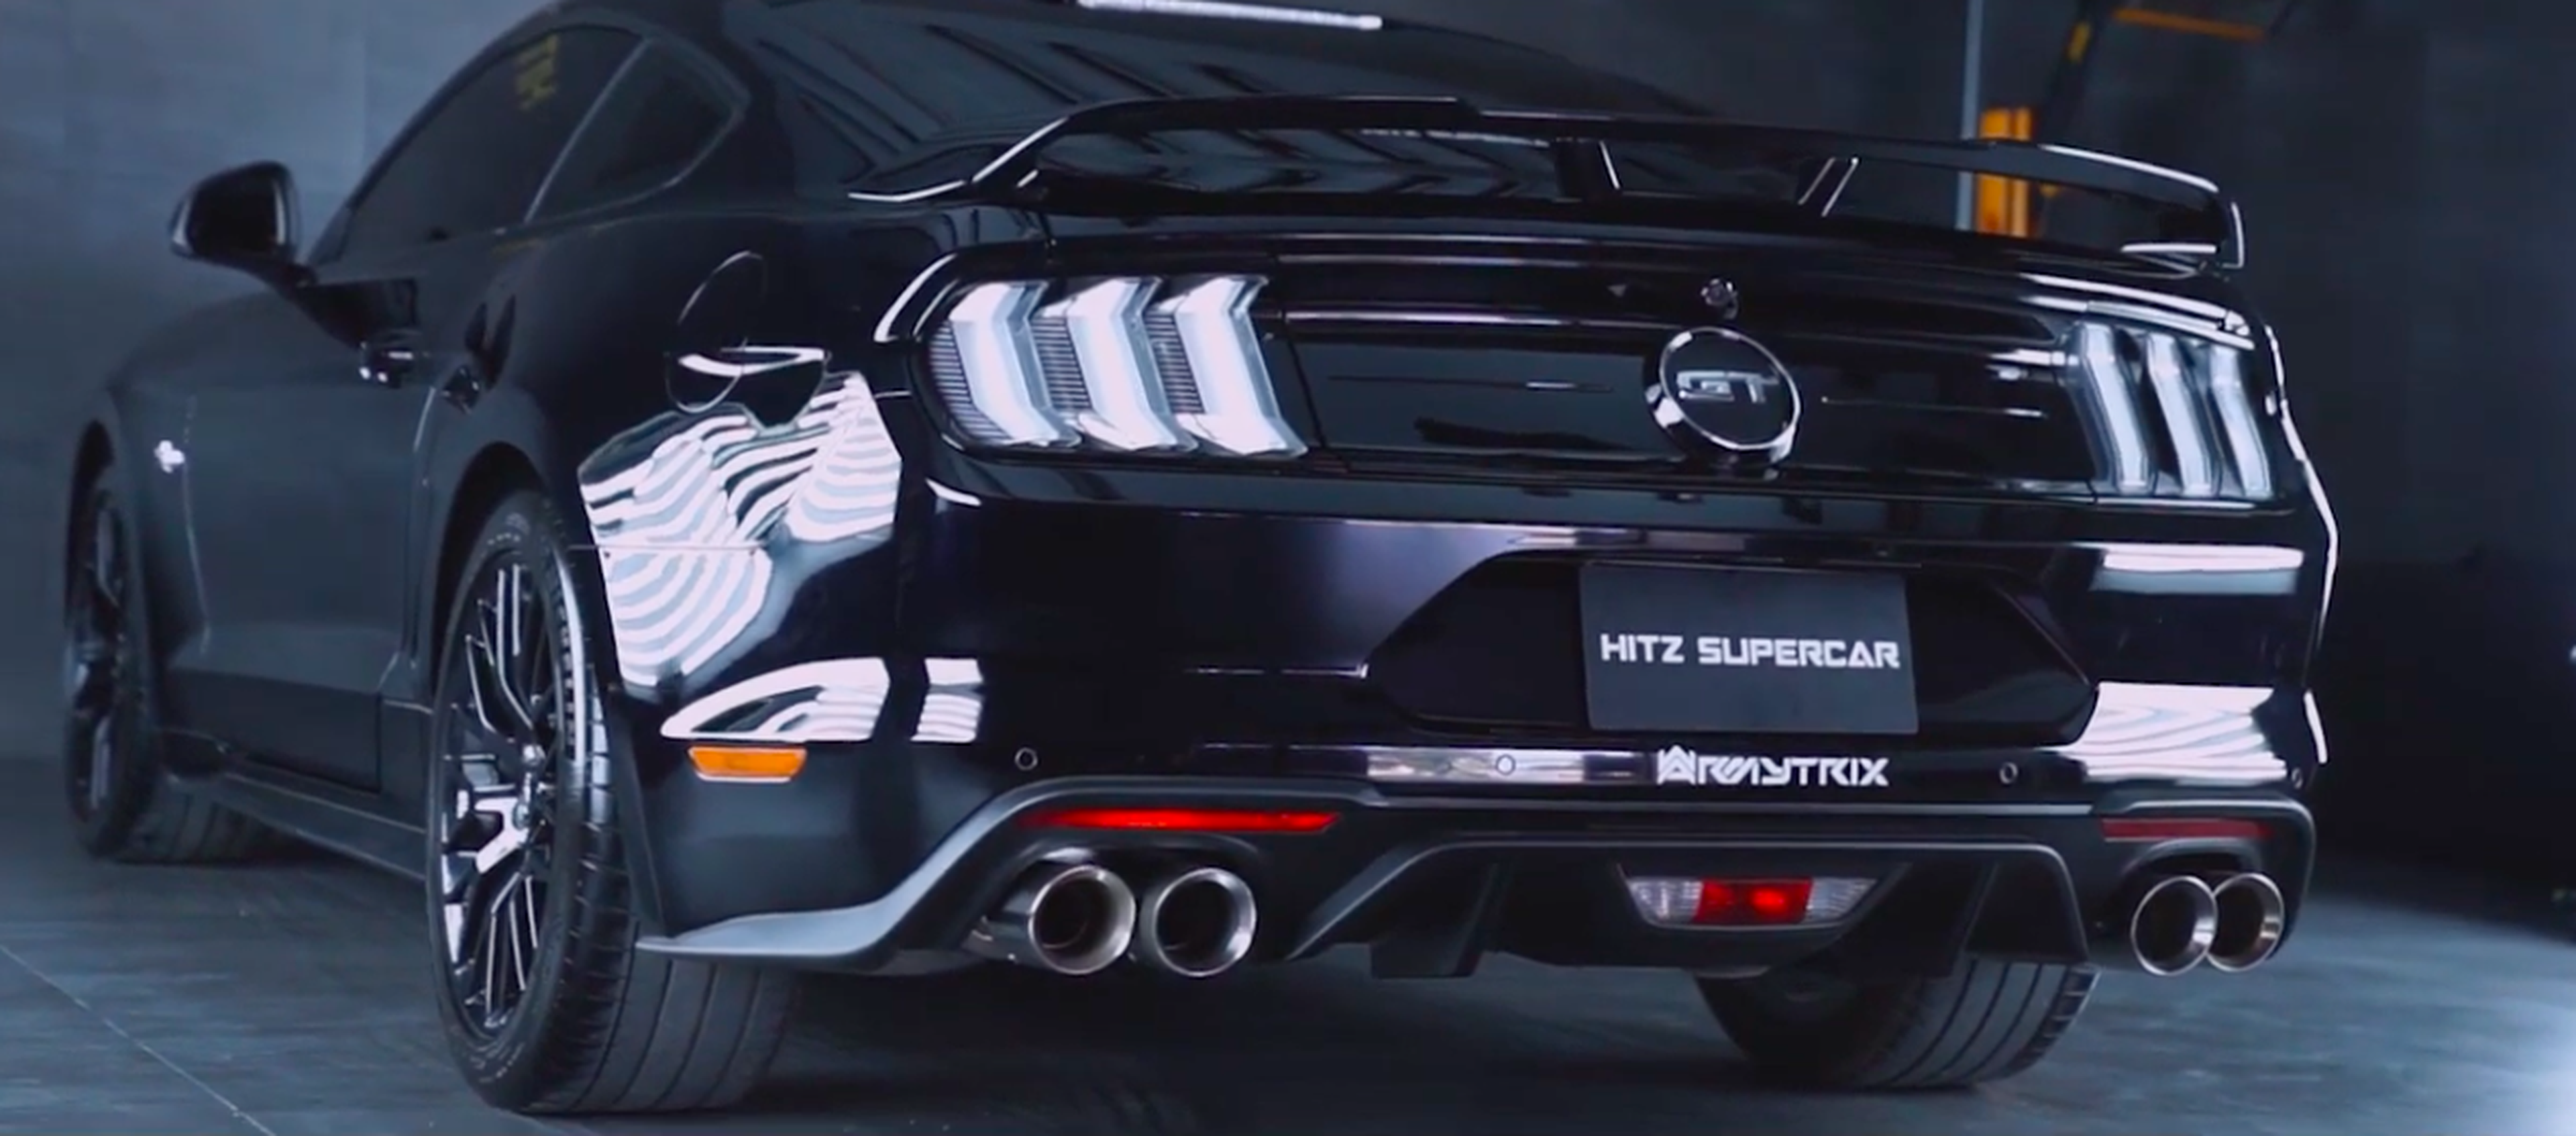 VÍDEO: Ford Mustang GT con escapes potenciados, ¡para empezar bien la semana!